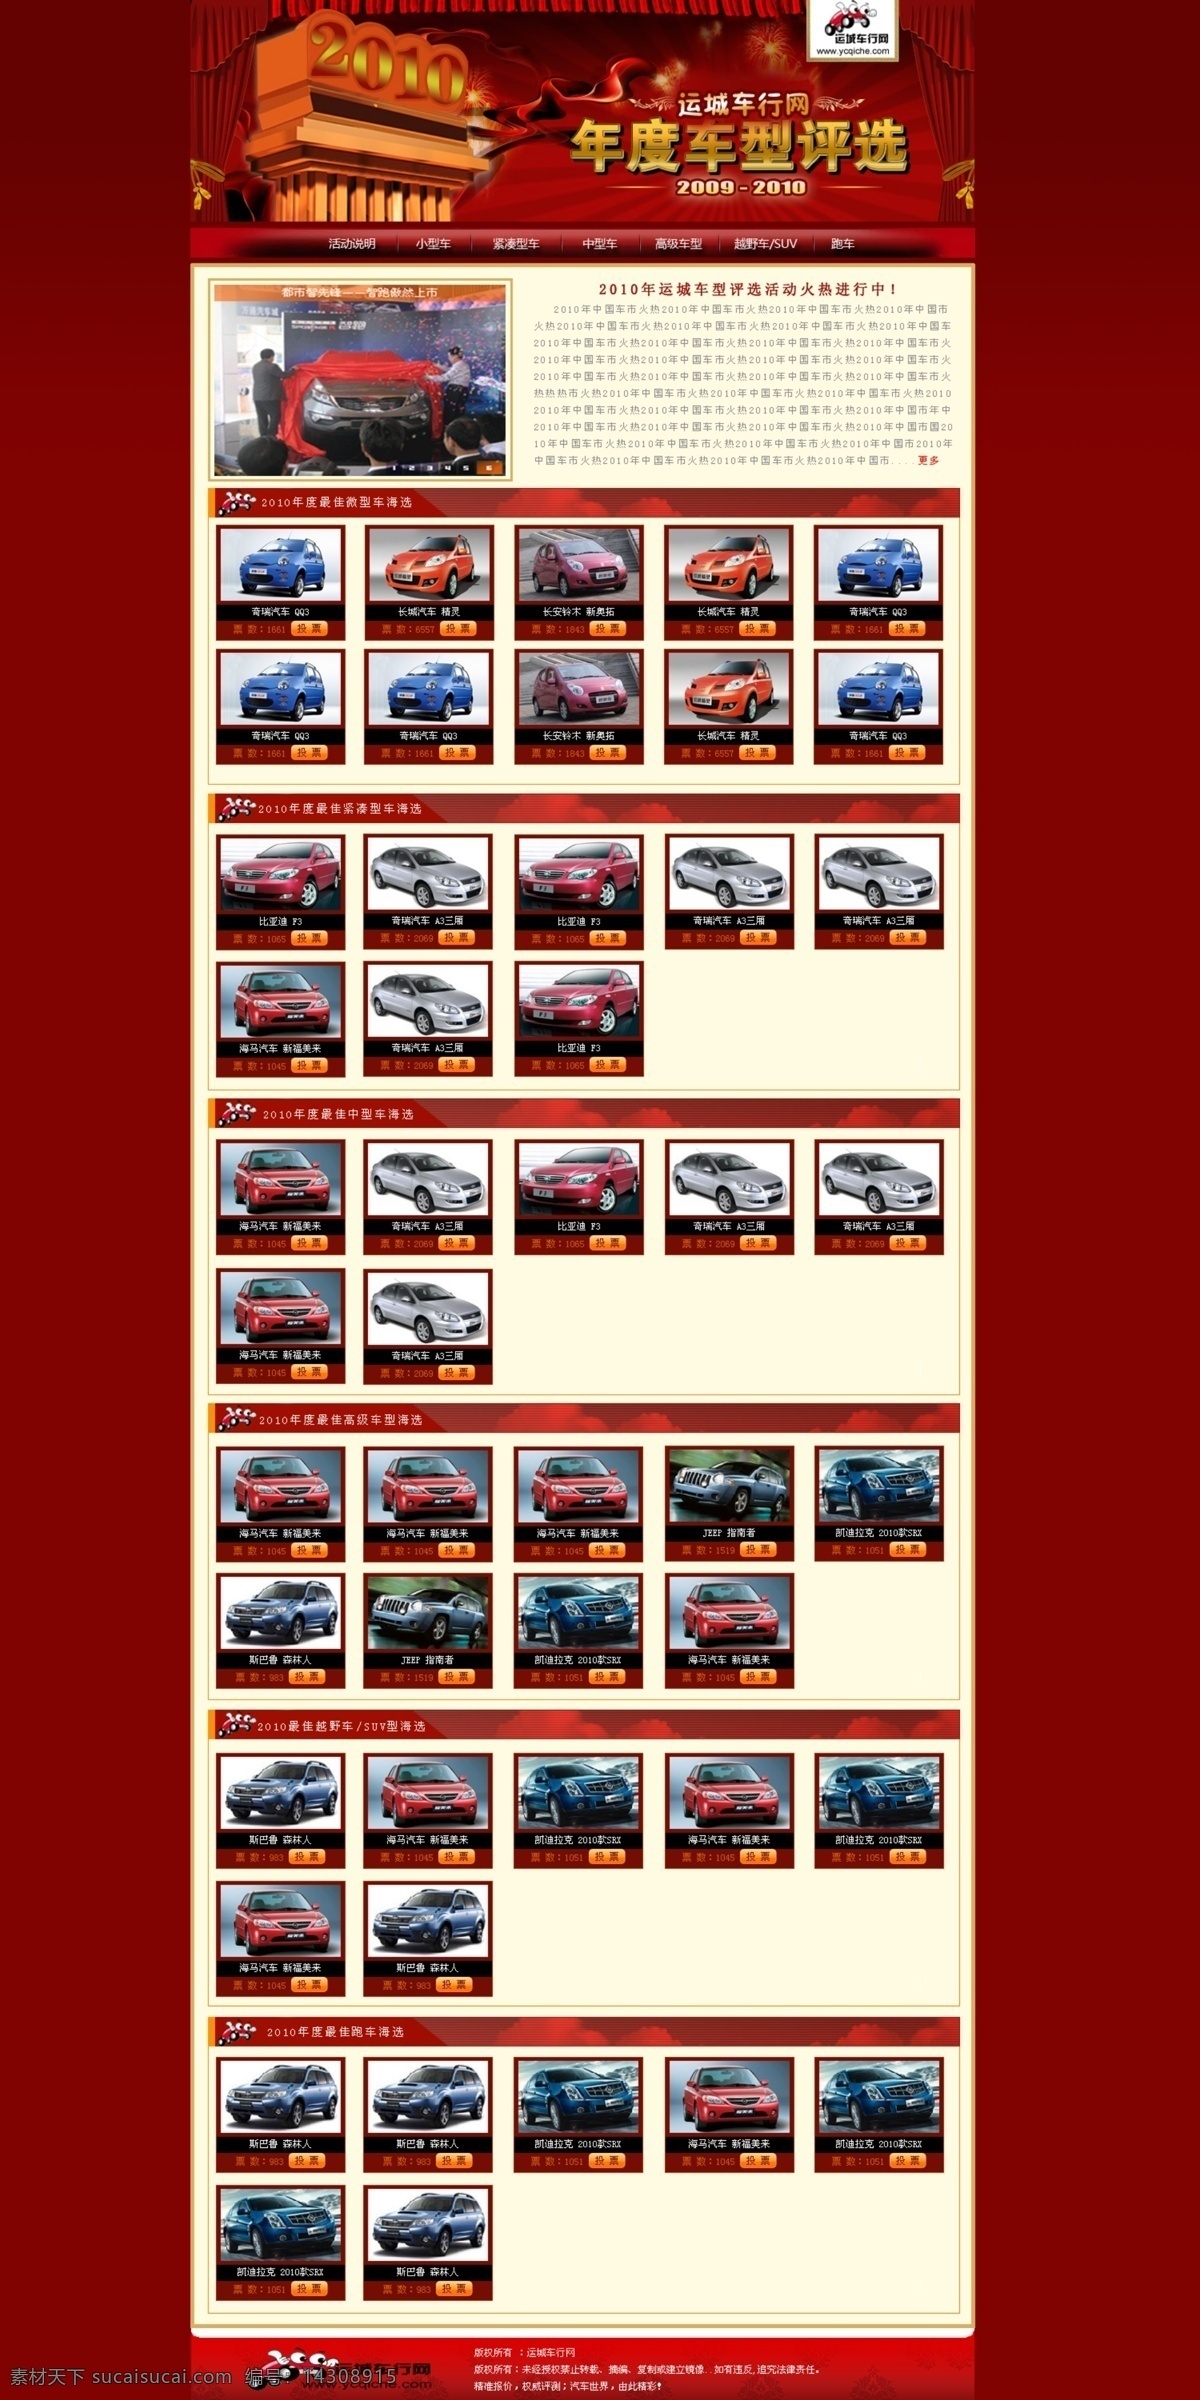 2010 年 车型 评选 网页模板 车 网站模板 源文件 中文模版 年度评选 网页素材